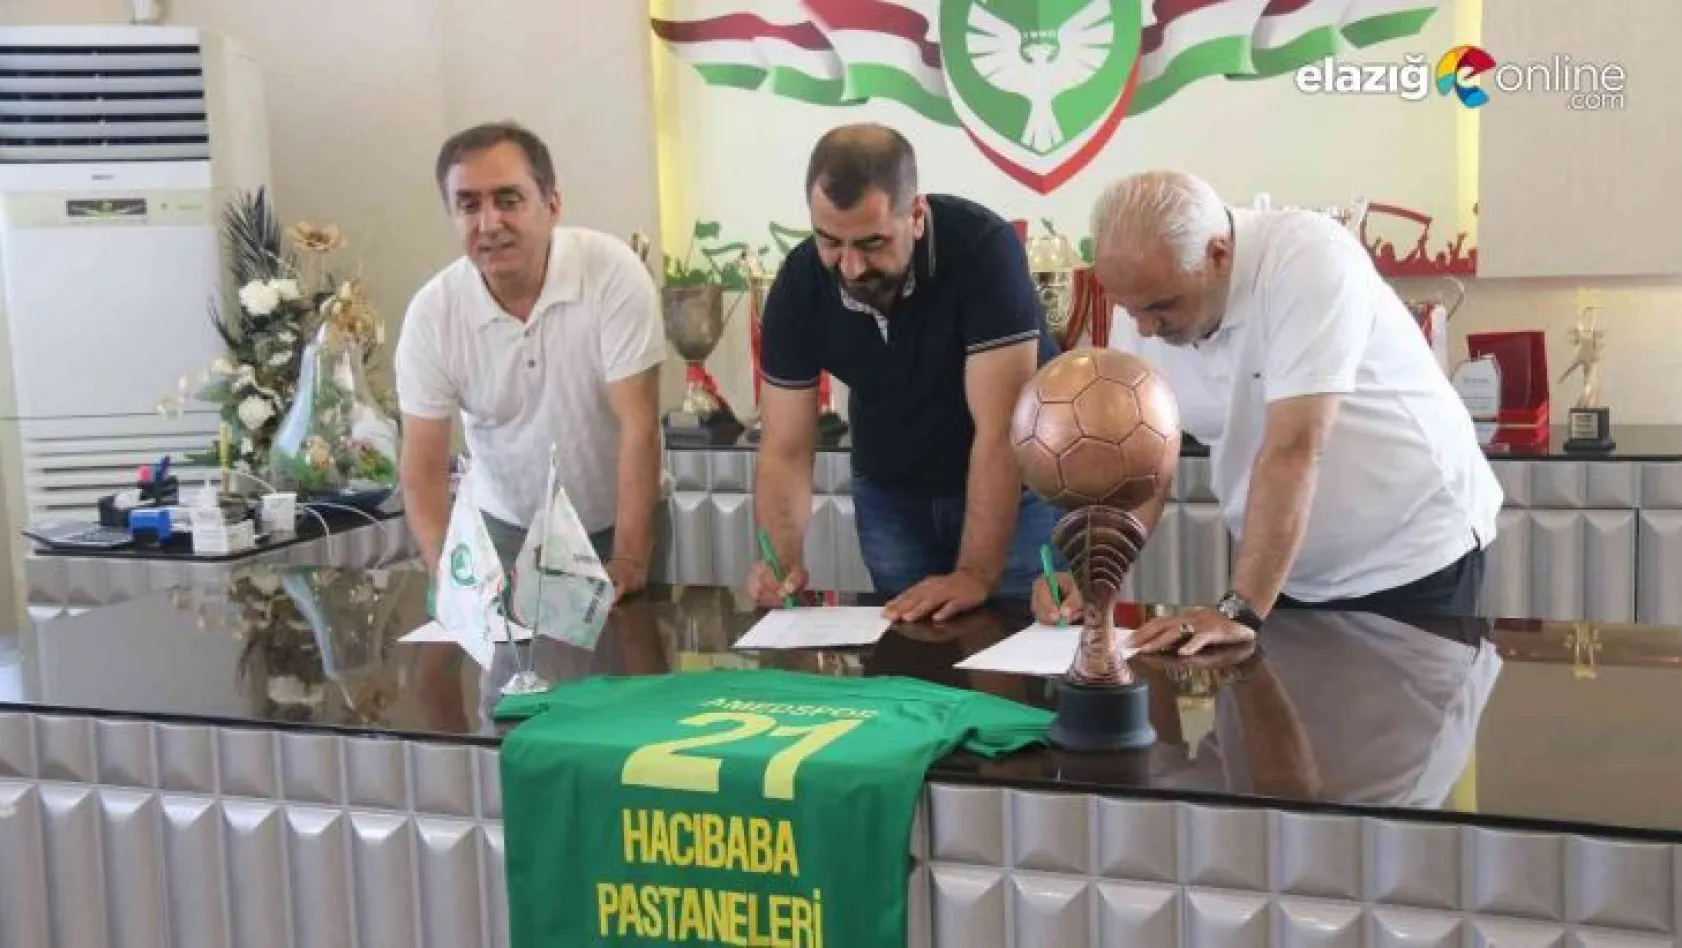 Hacı Baba Pastaneleri, Amed Sportif Faaliyetler'e göğüs sponsoru oldu